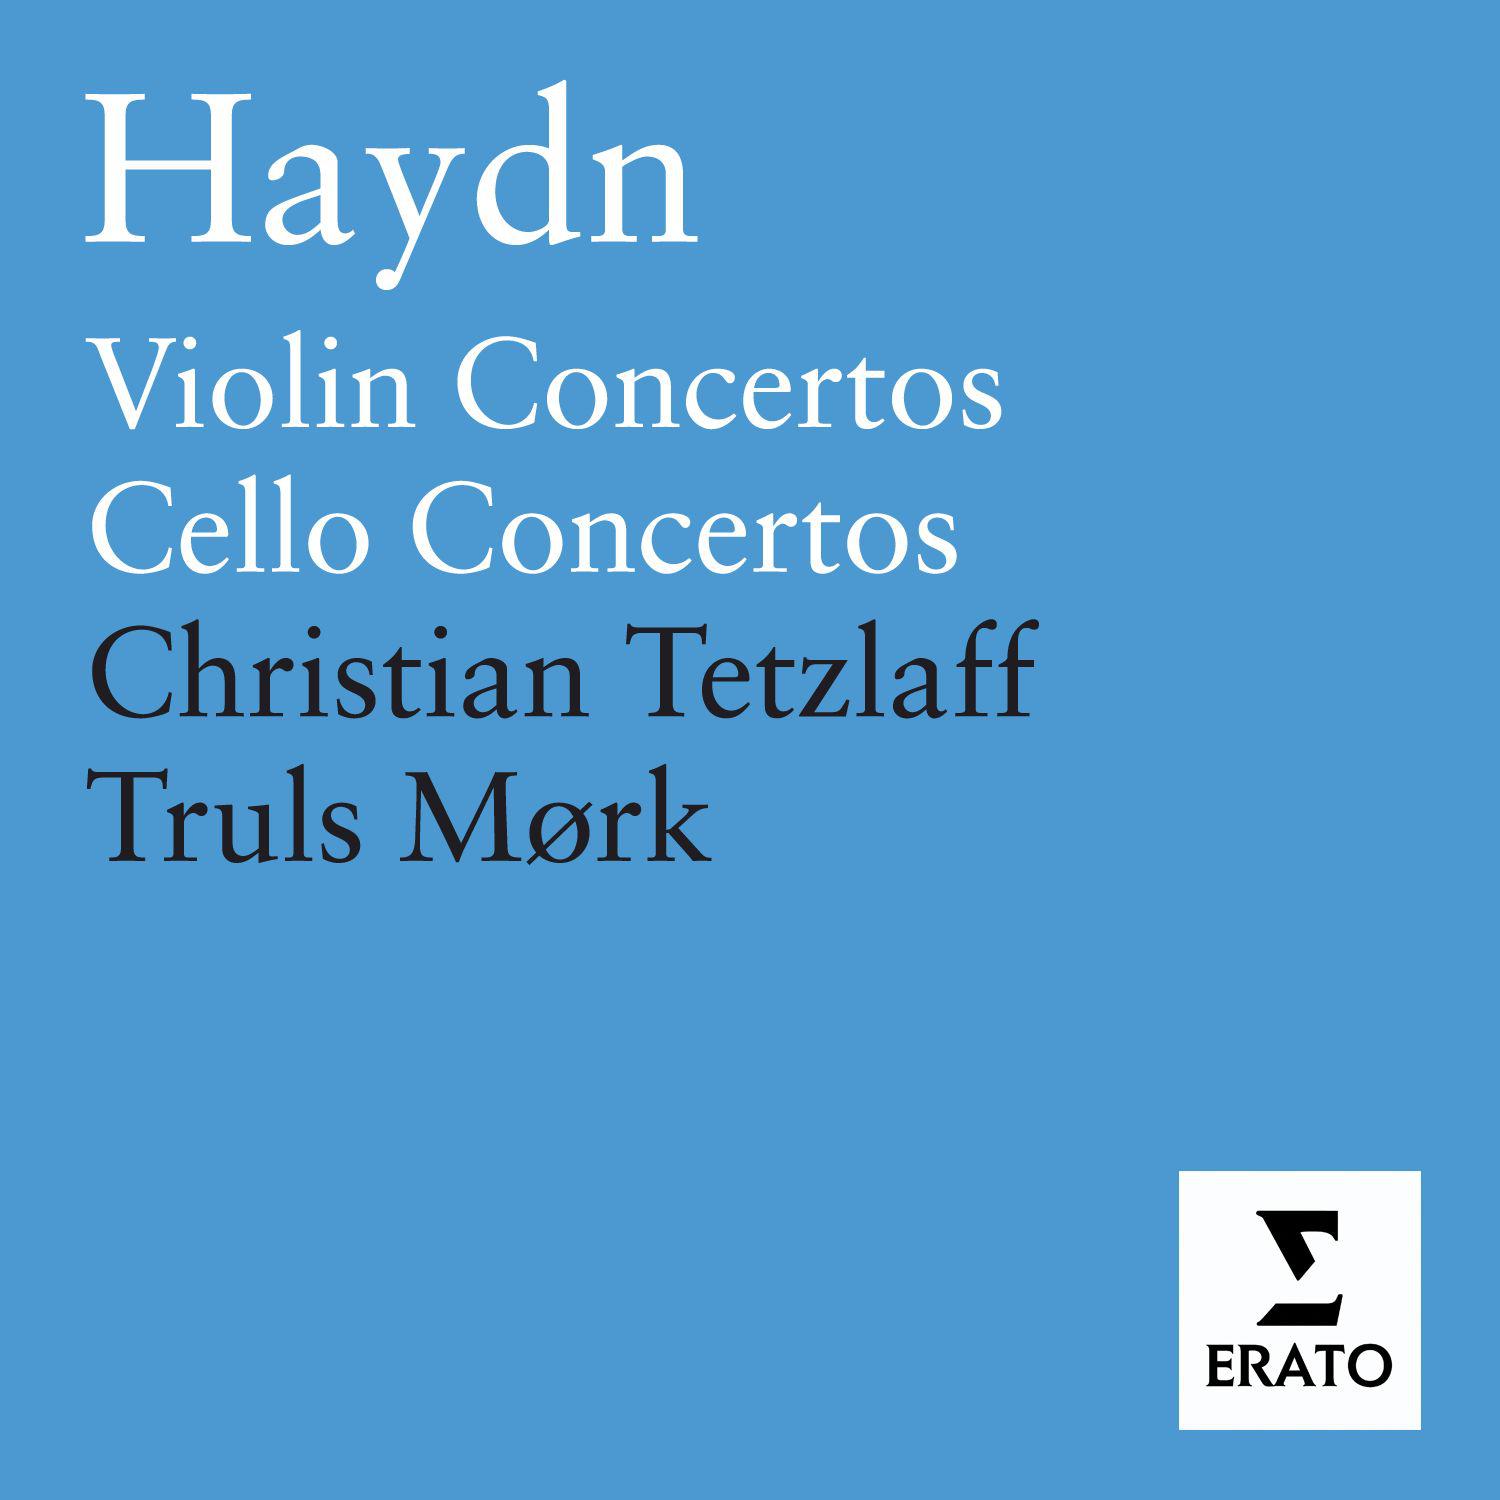 Violin Concerto in G Major, Hob. VIIa/4: II. Adagio